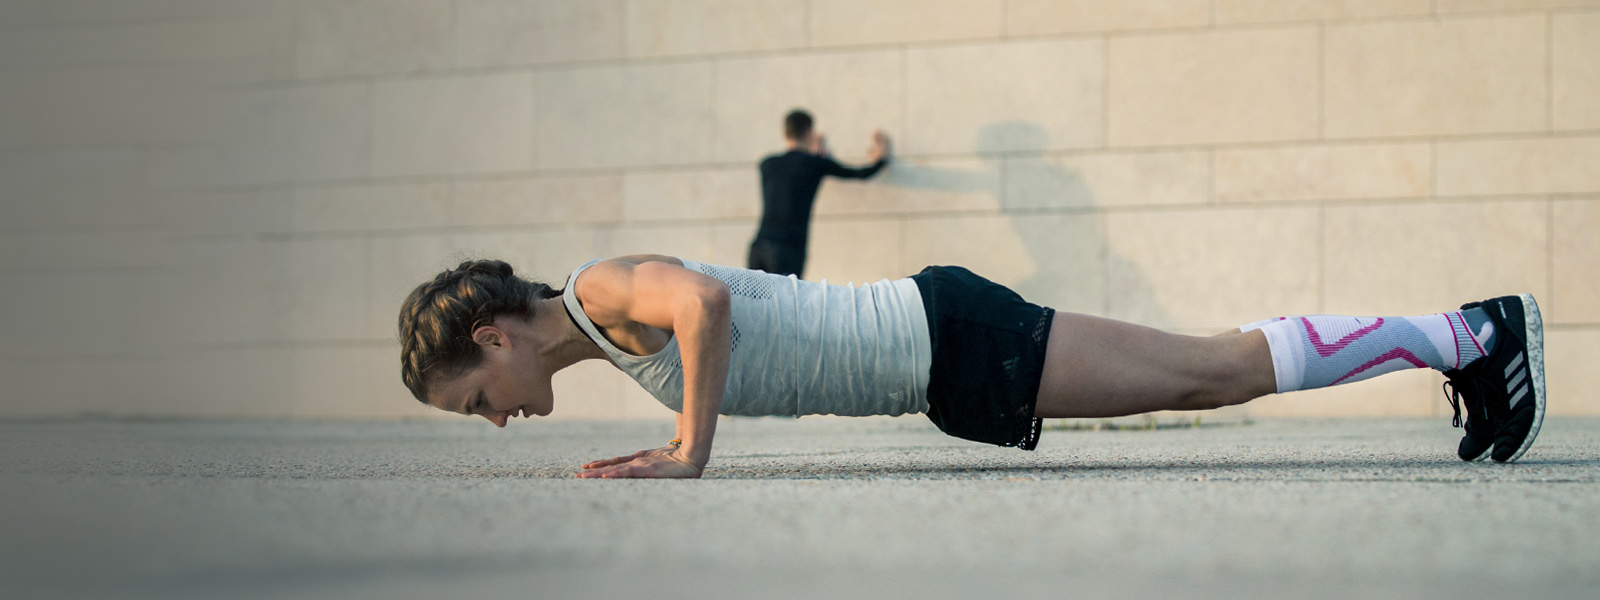 La donna fa push-up su un pavimento di cemento sullo sfondo che un uomo si estende su un muro